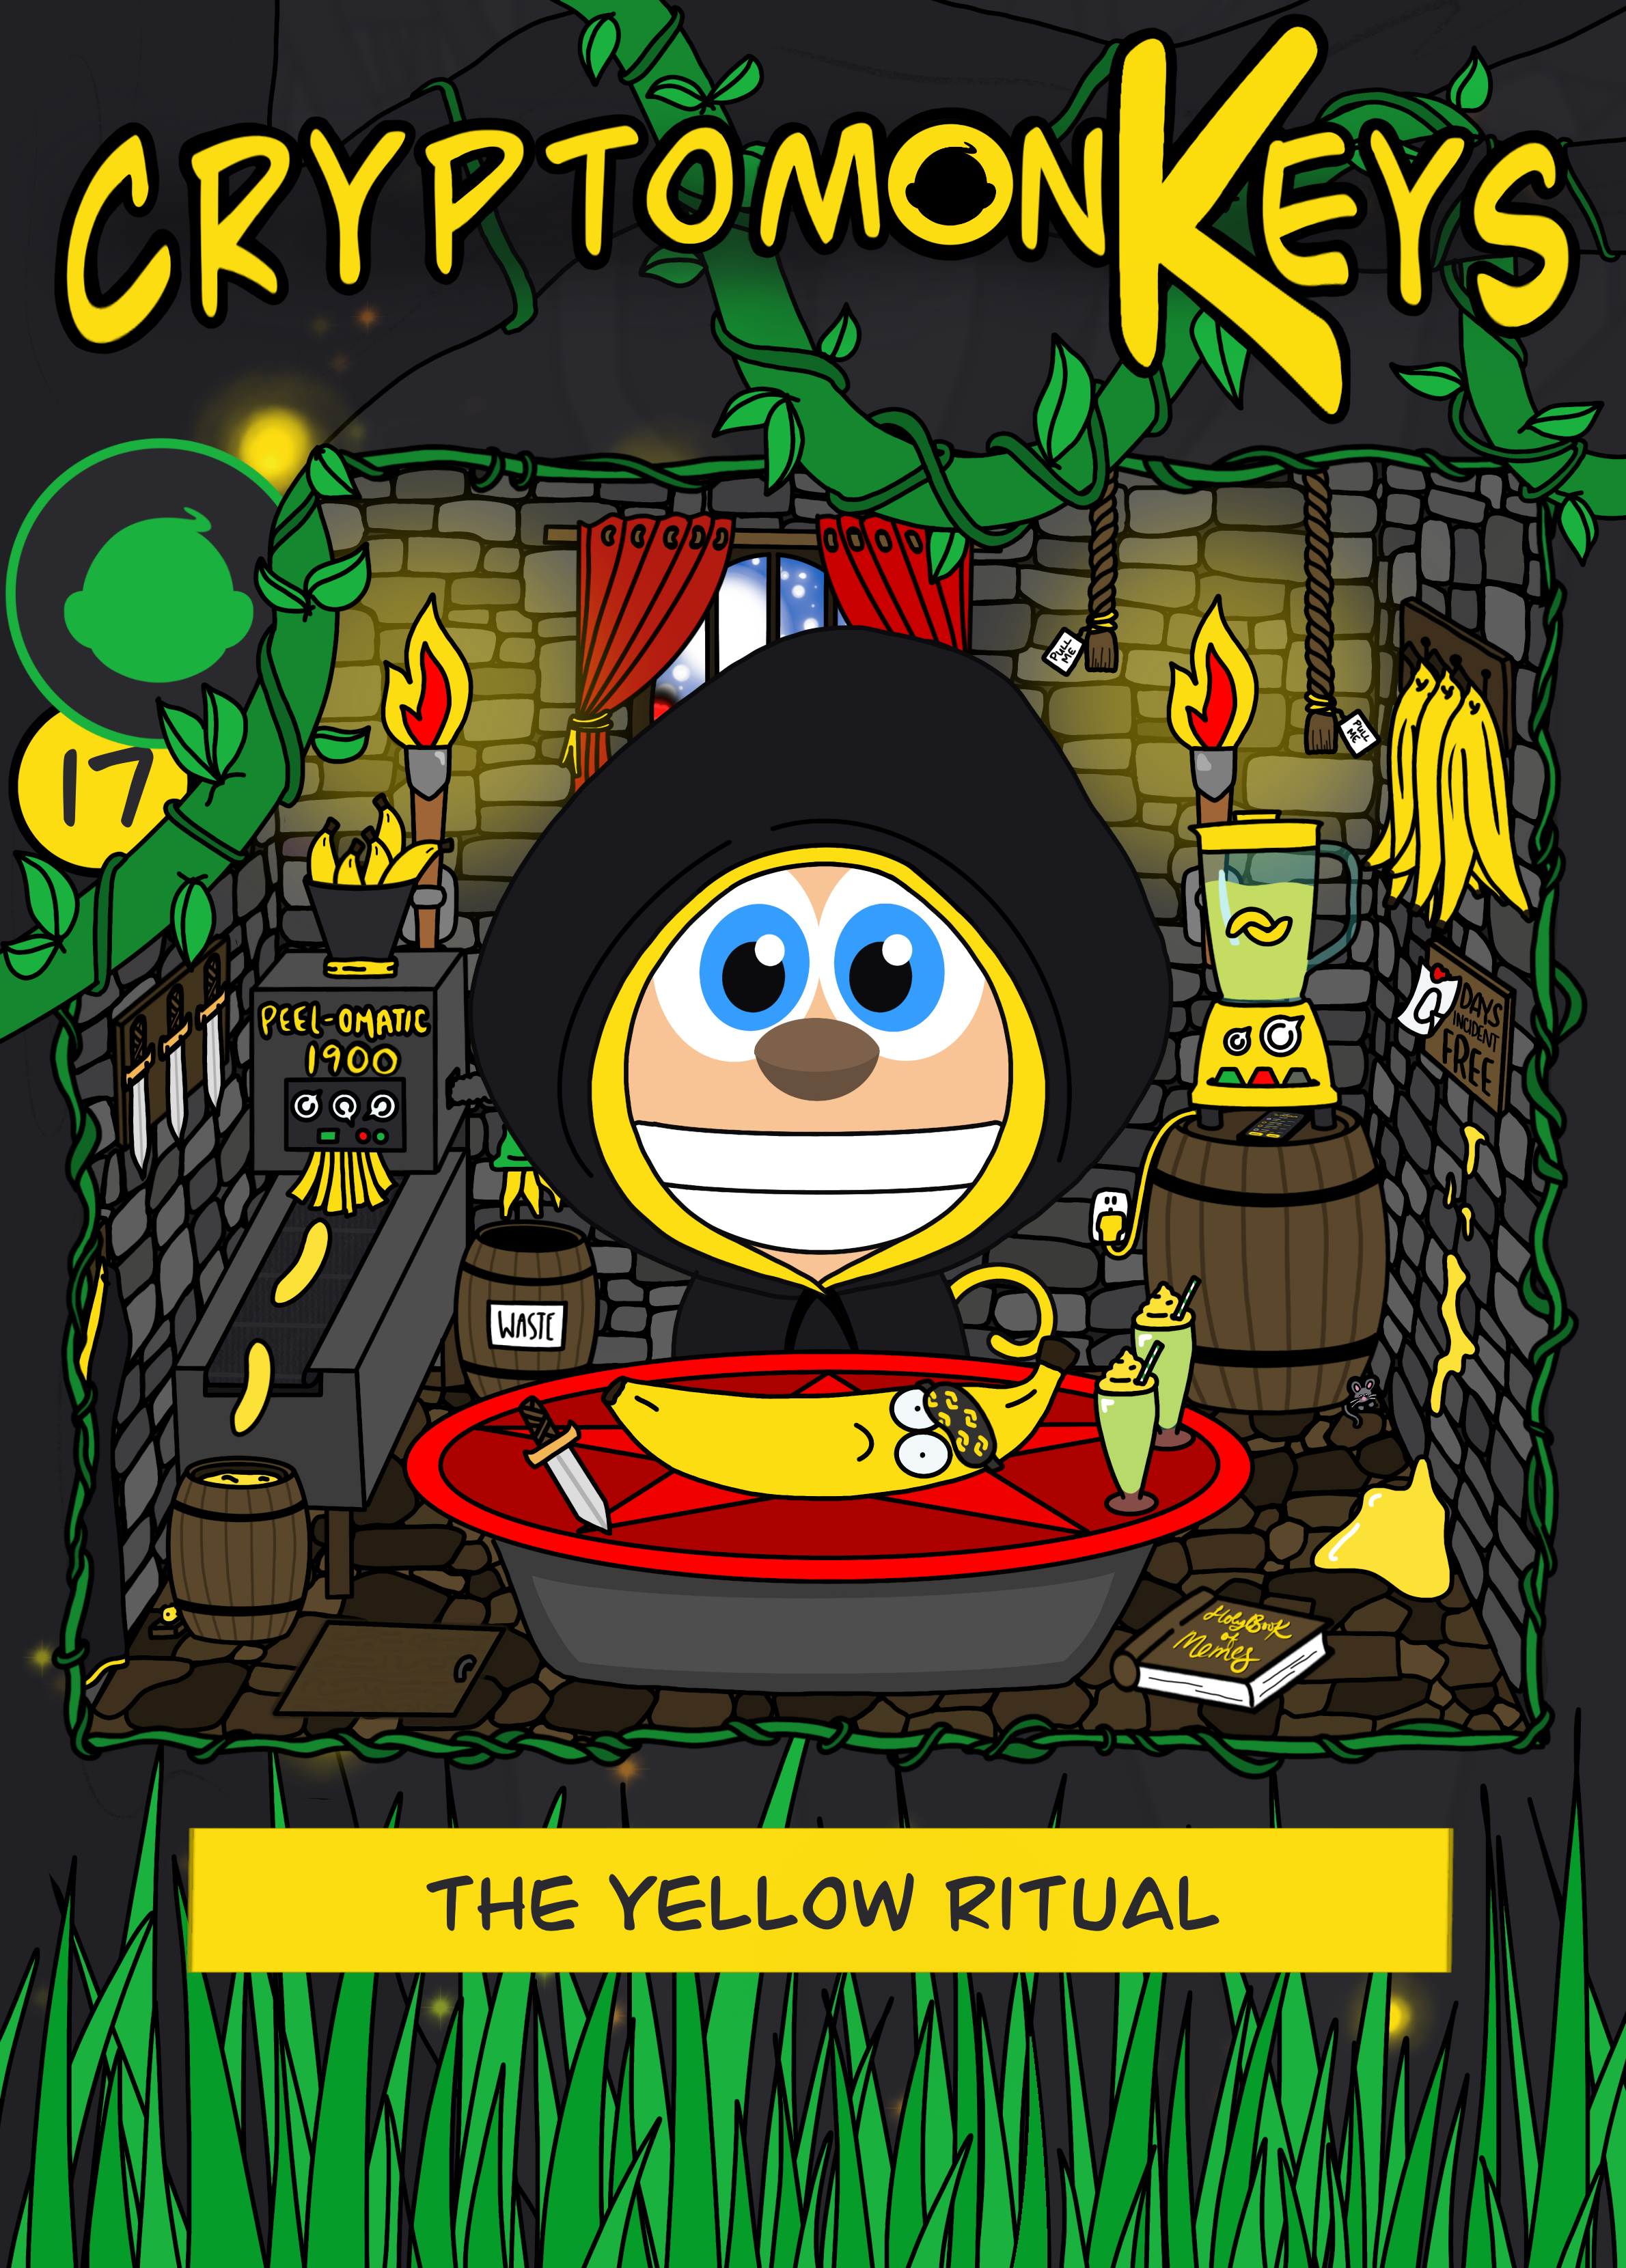 The Yellow Ritual